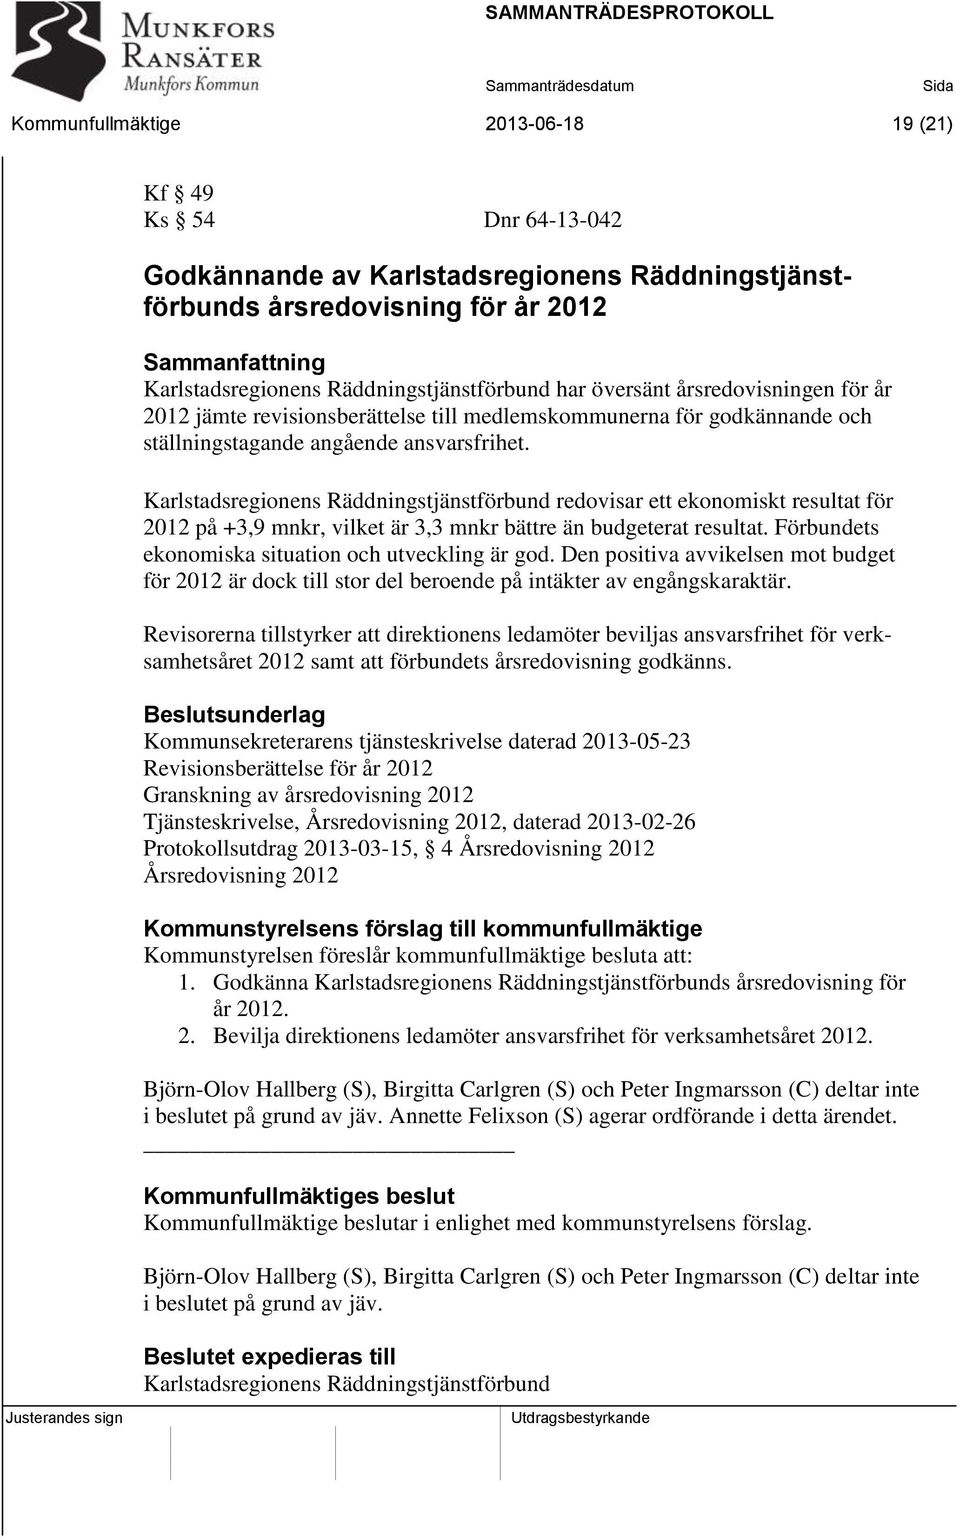 Karlstadsregionens Räddningstjänstförbund redovisar ett ekonomiskt resultat för 2012 på +3,9 mnkr, vilket är 3,3 mnkr bättre än budgeterat resultat.